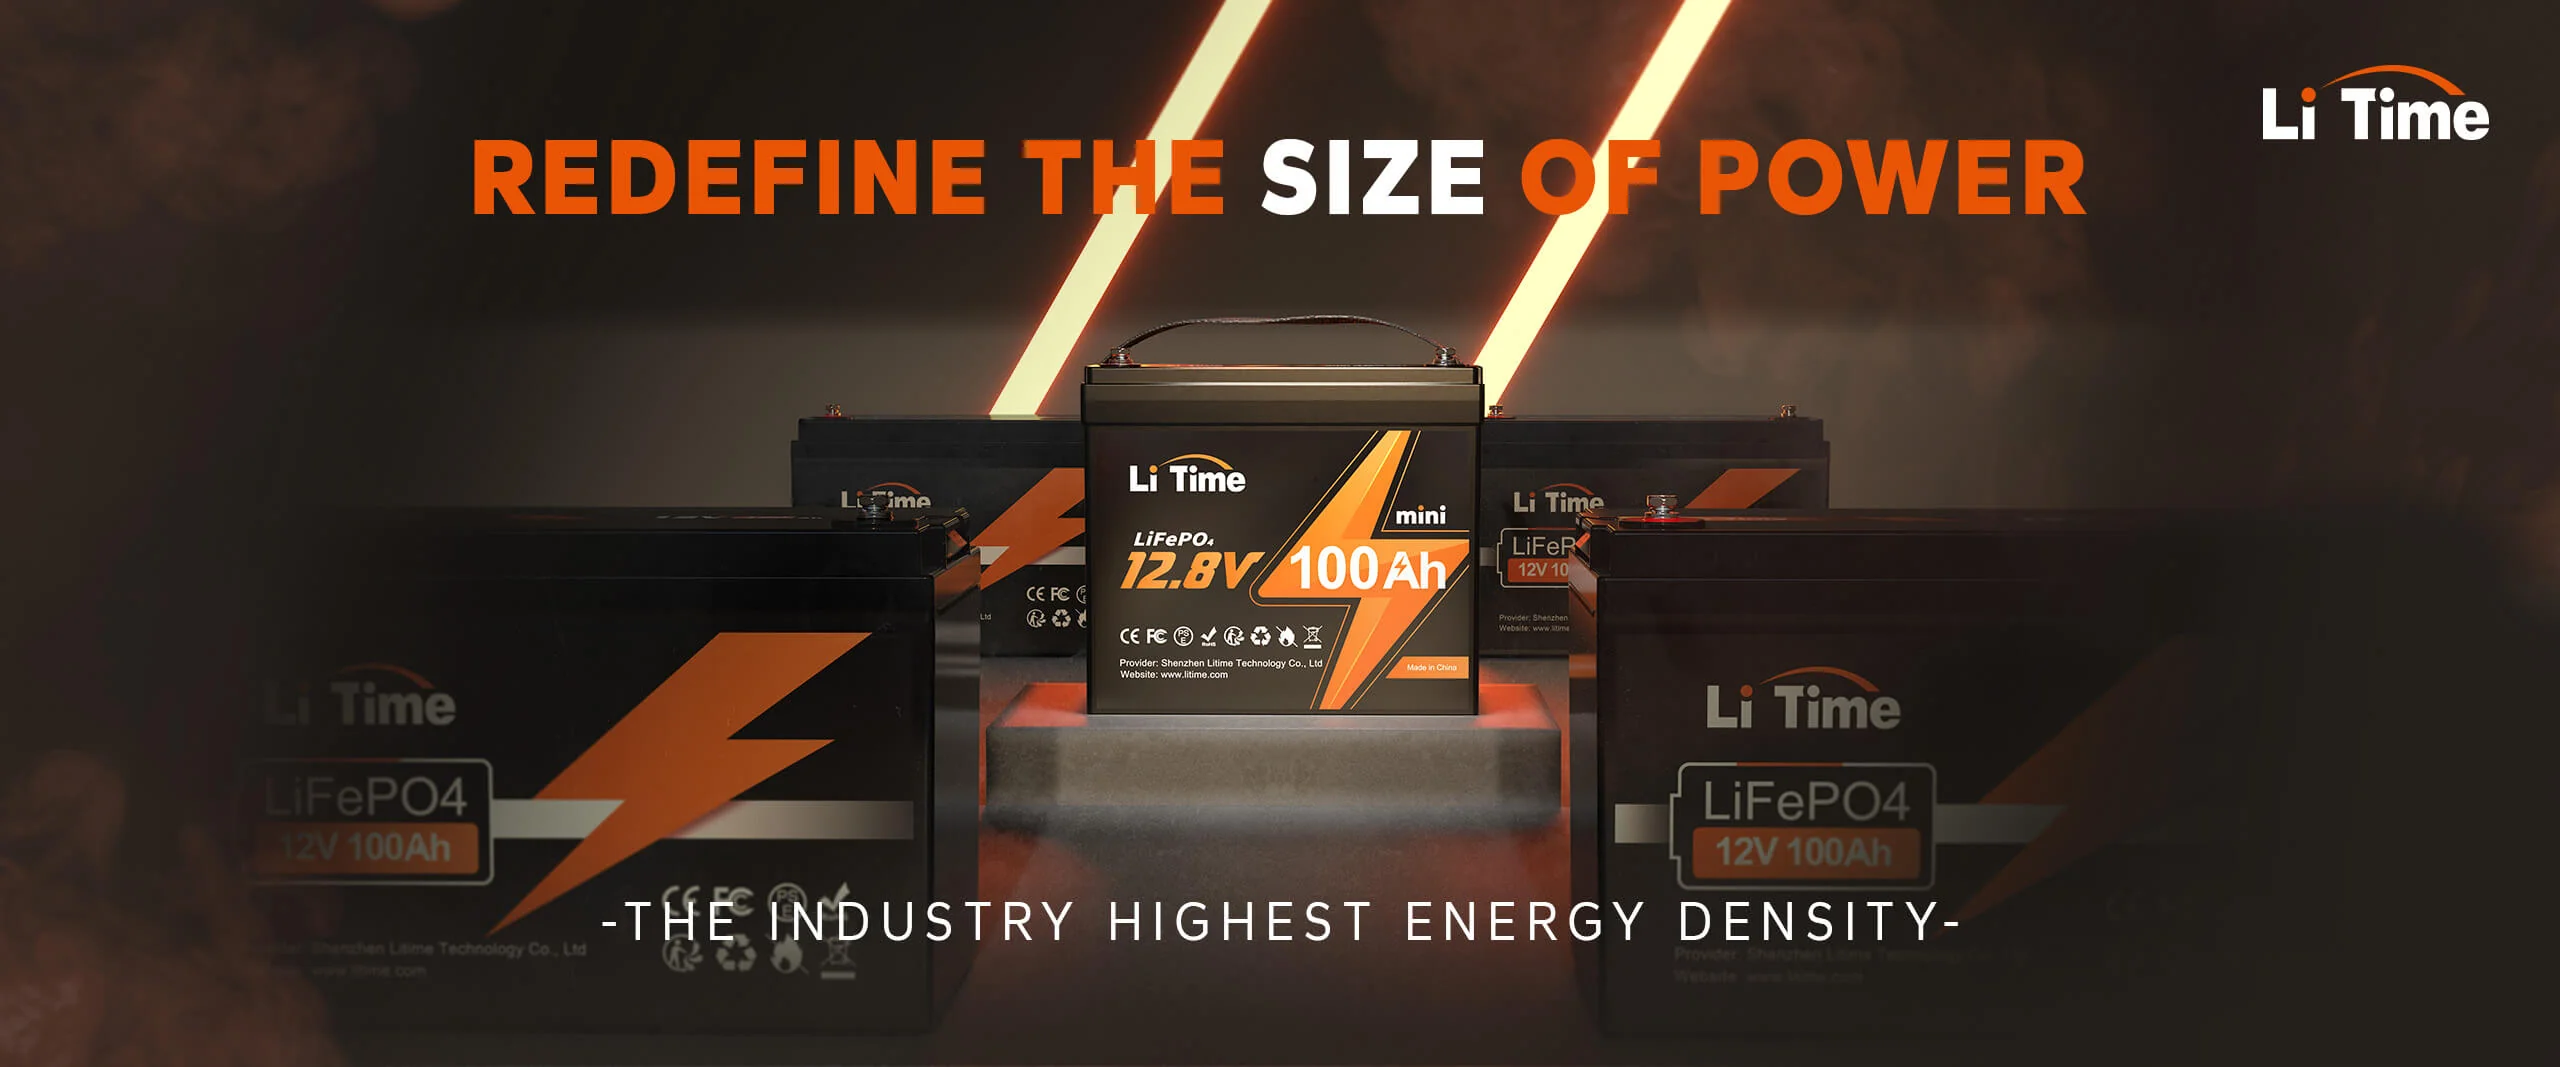 litime12v 100ah mini lithium battery lightest smallest